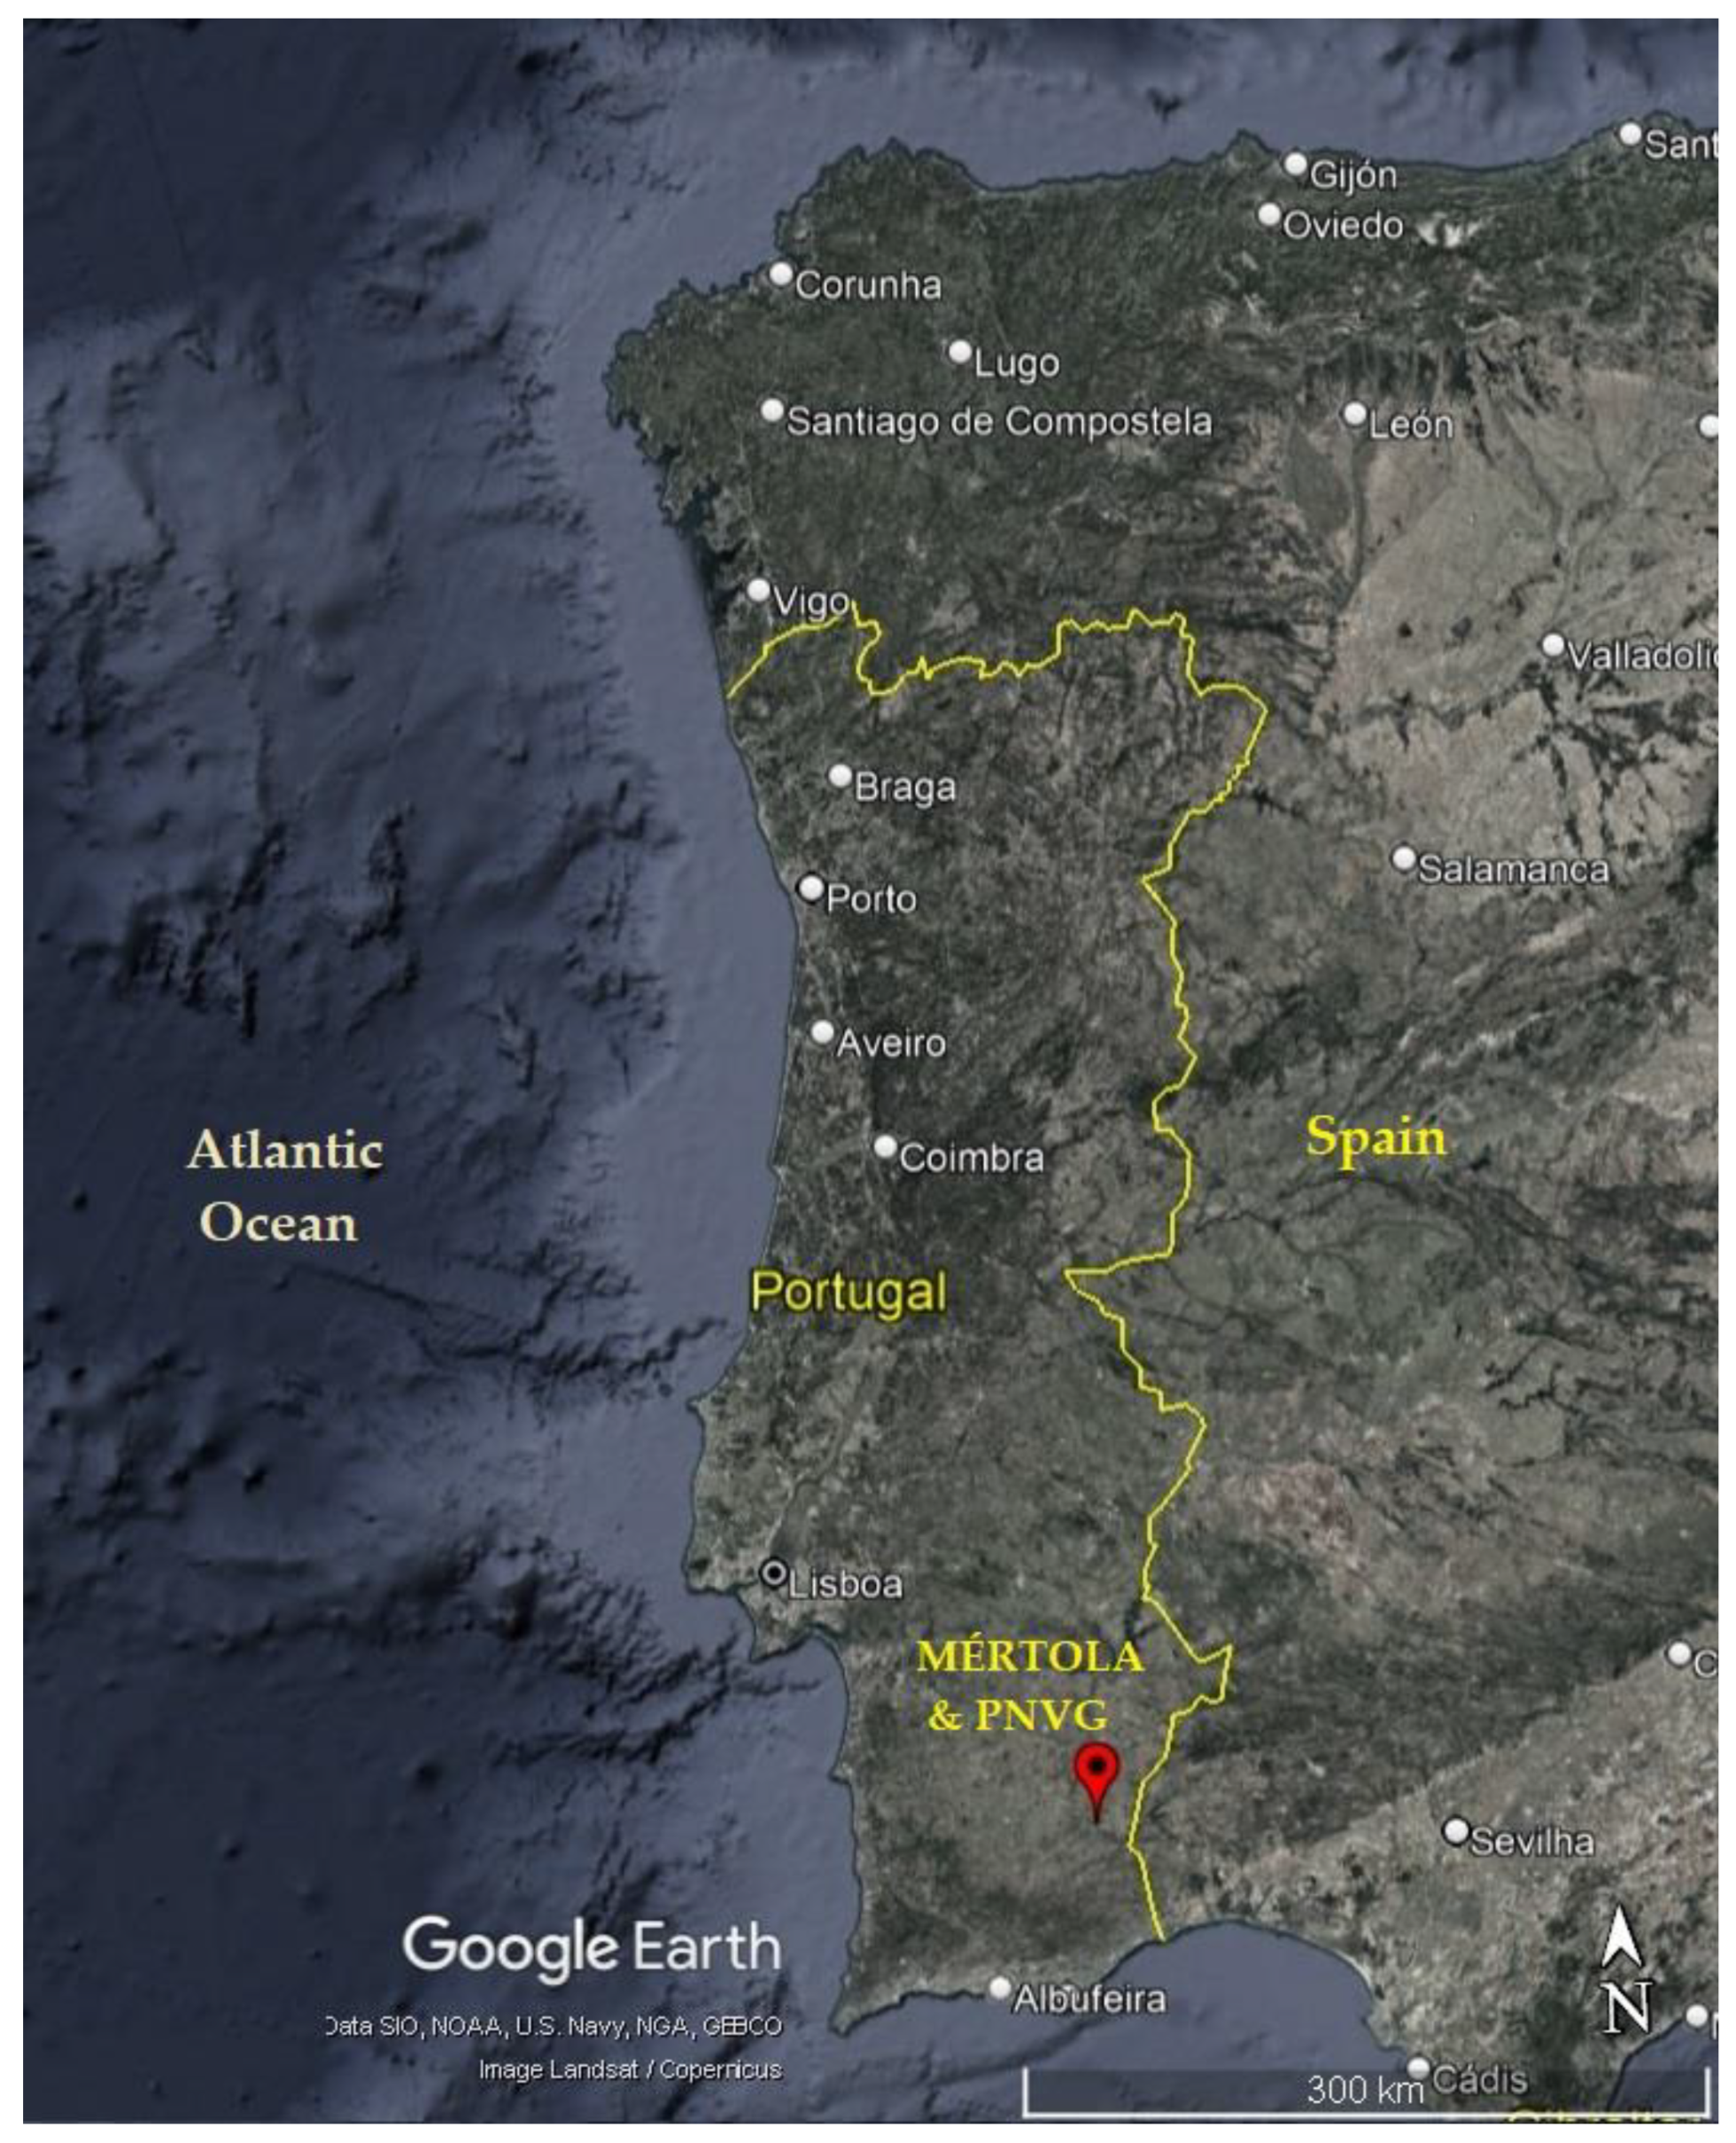 mapa de portugal cidades - Pesquisa Google